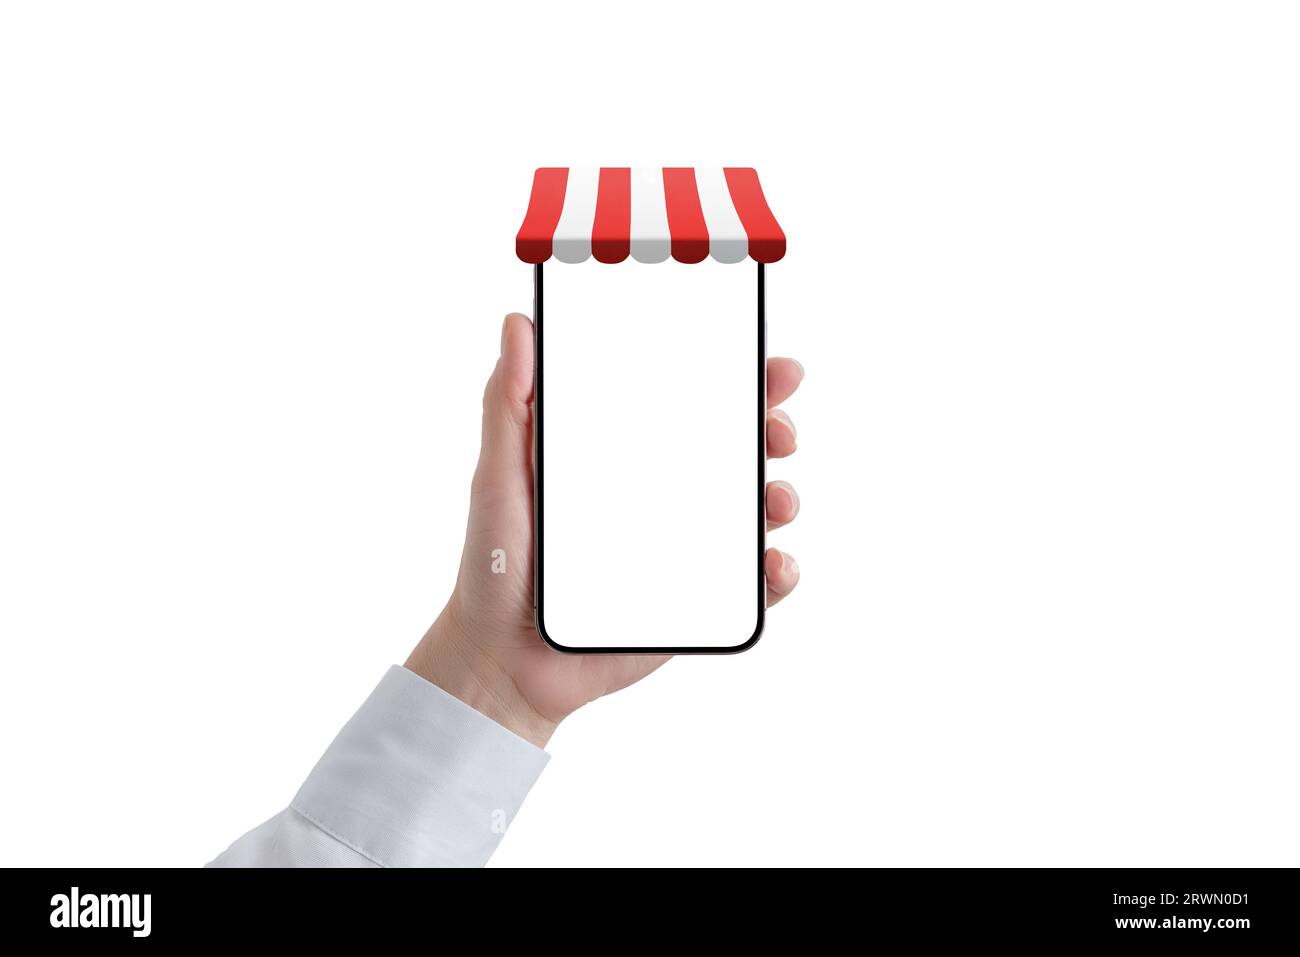 Telefon in Frauenhand mit rot-weißer Markise auf Telefon-Display-Konzept. Isolierter Bildschirm und Hintergrund. Das Telefon befindet sich in der vorderen Position Stockfoto